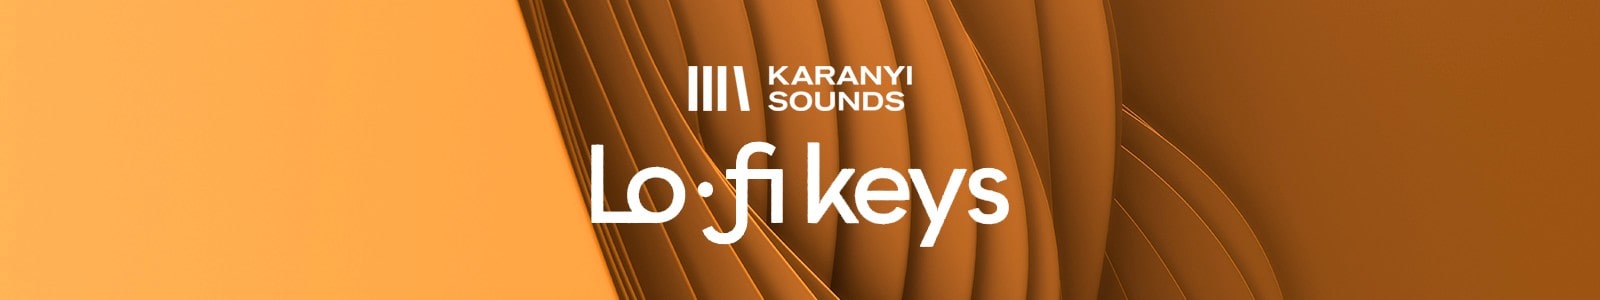 Karanyi Sounds LoFi Keys